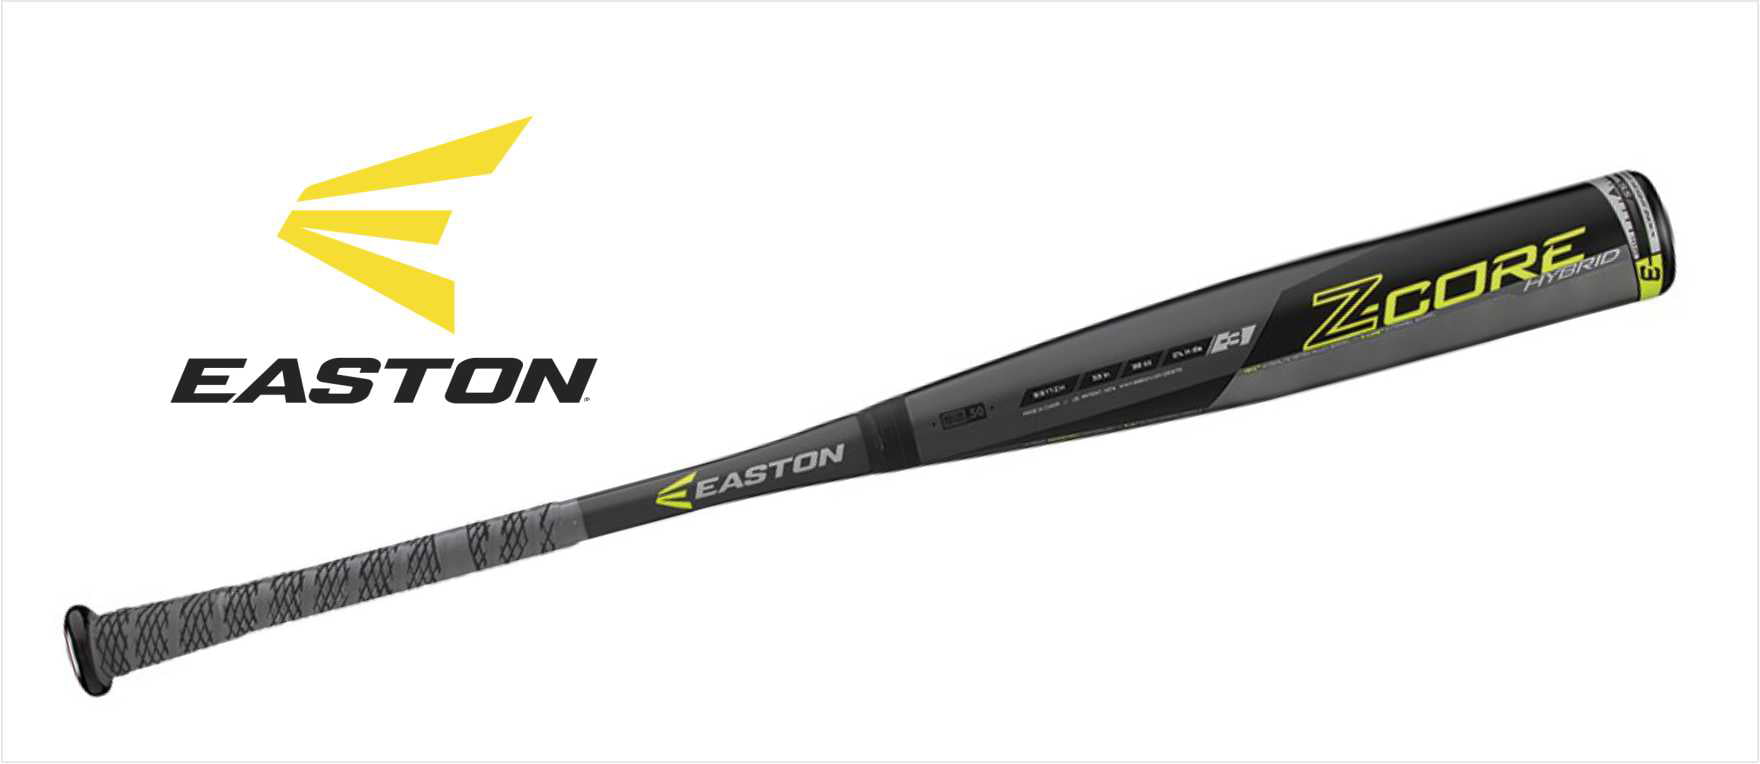 Easton BB16ZHL 34/31 Z-Core Hybrid XL BBCOR Baseball Bat 